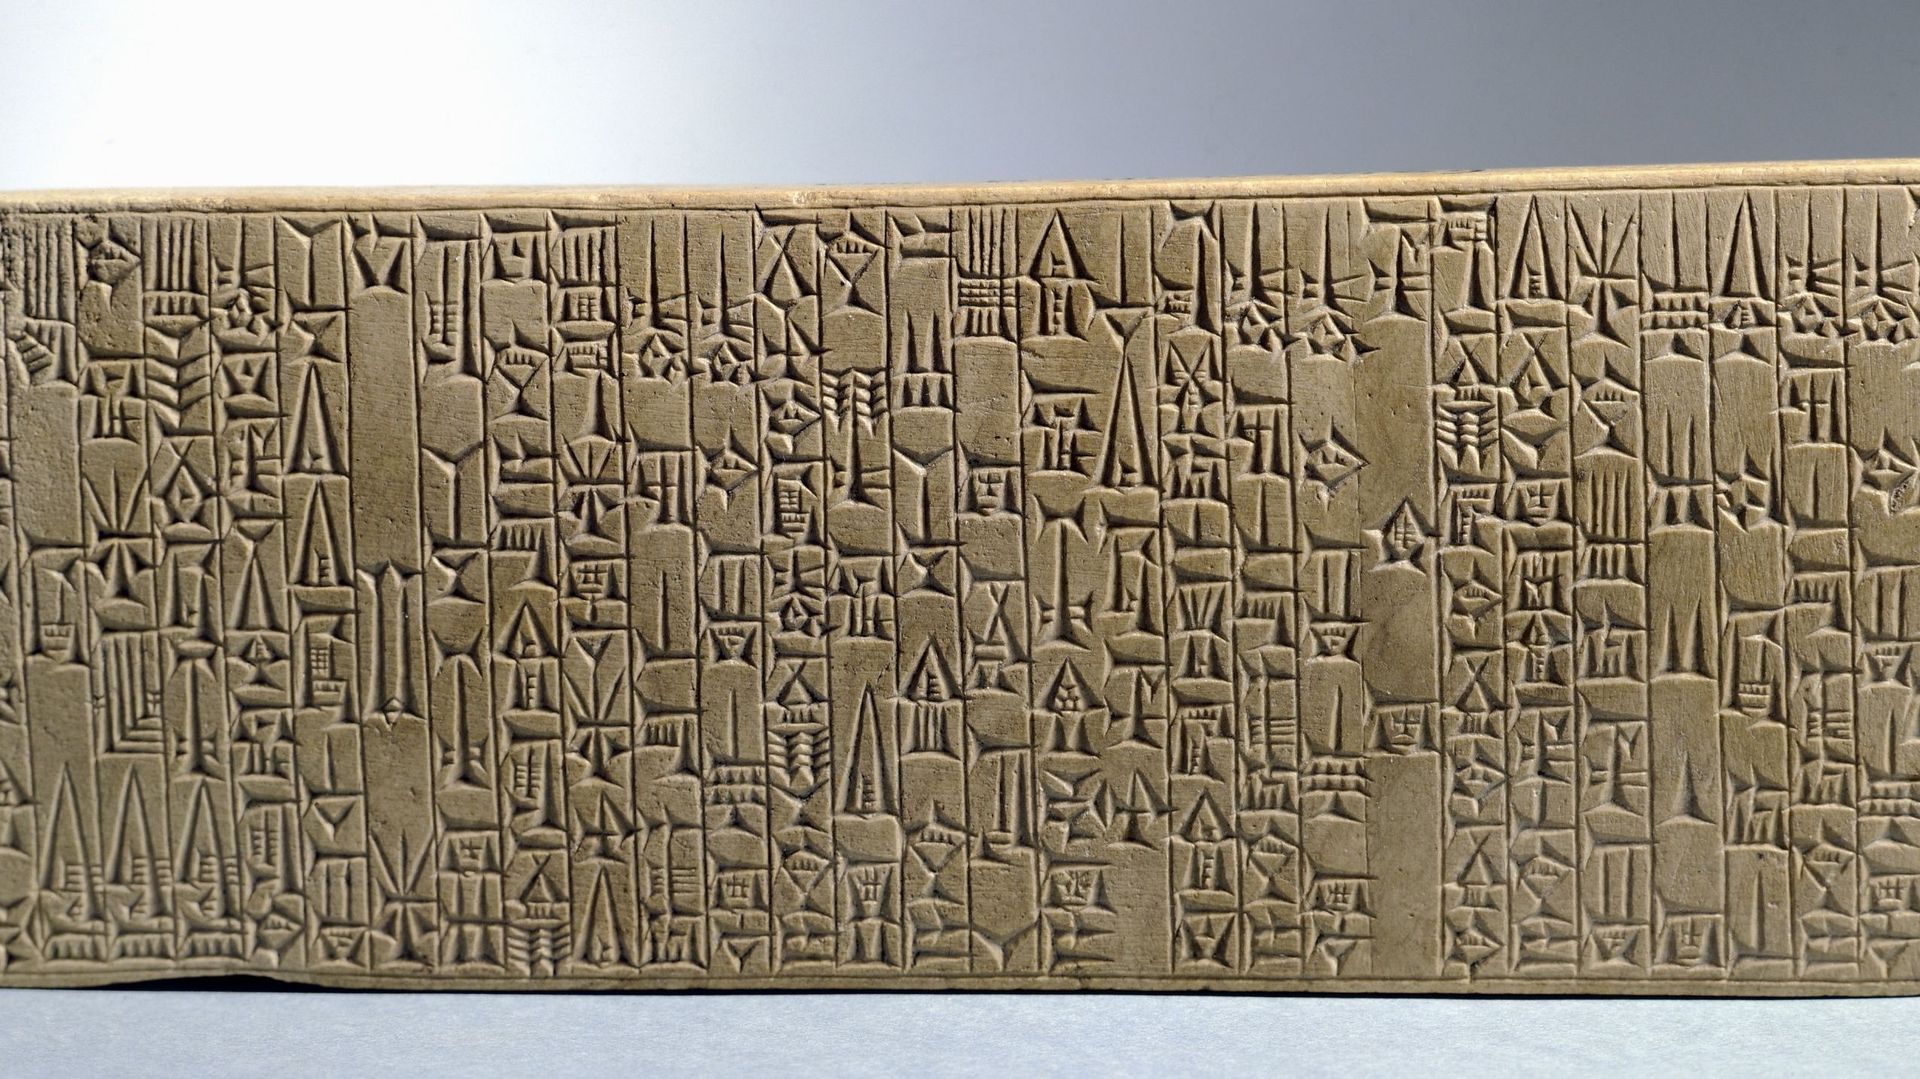 La tablette de fondation de Babylone par le Roi Hammurabi, 18e siècle av. J.-C., Paris, Musée Du Louvre.